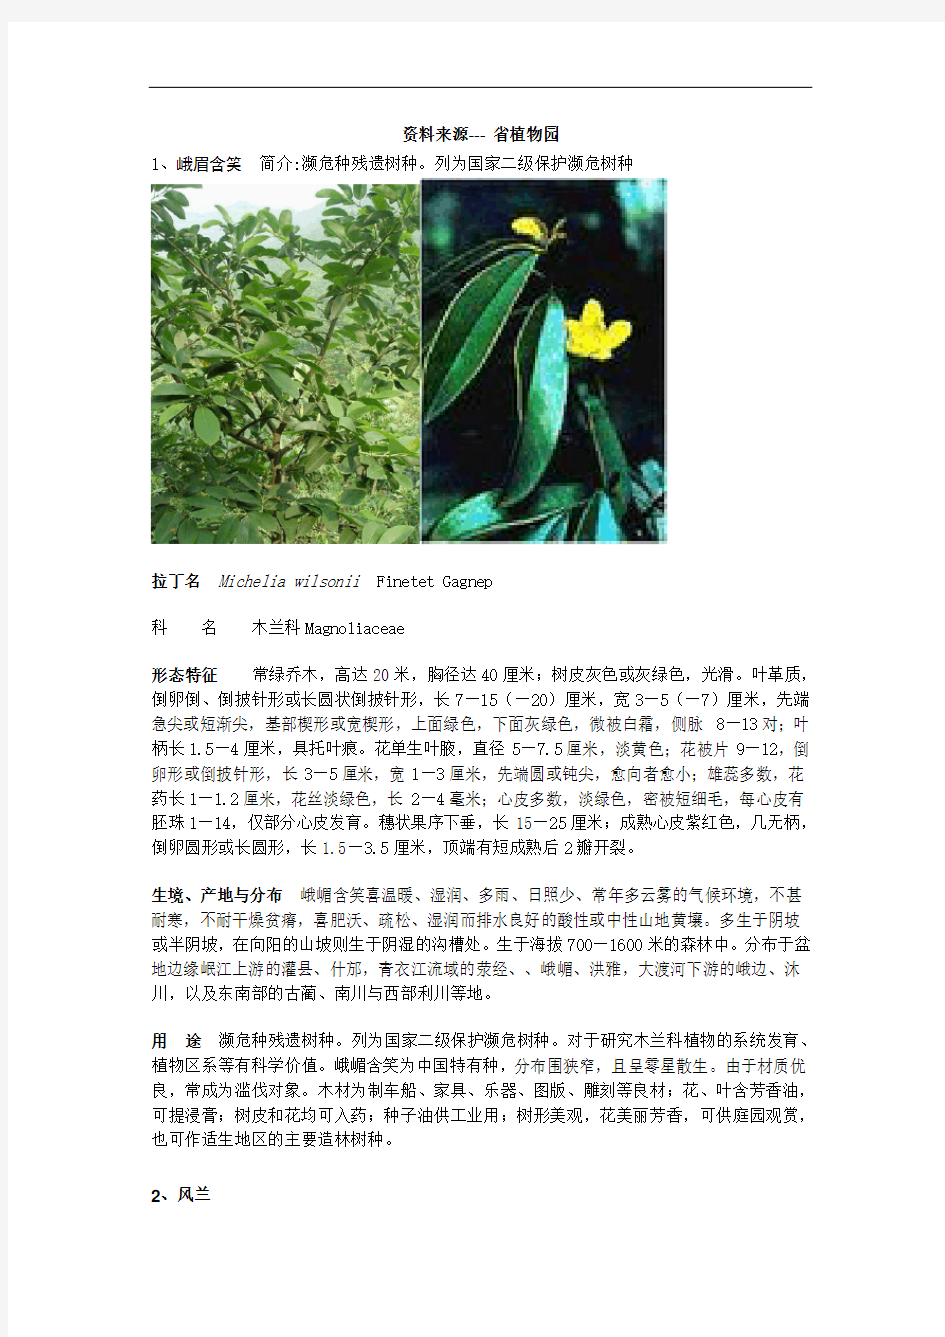 贵州珍稀野生植物1